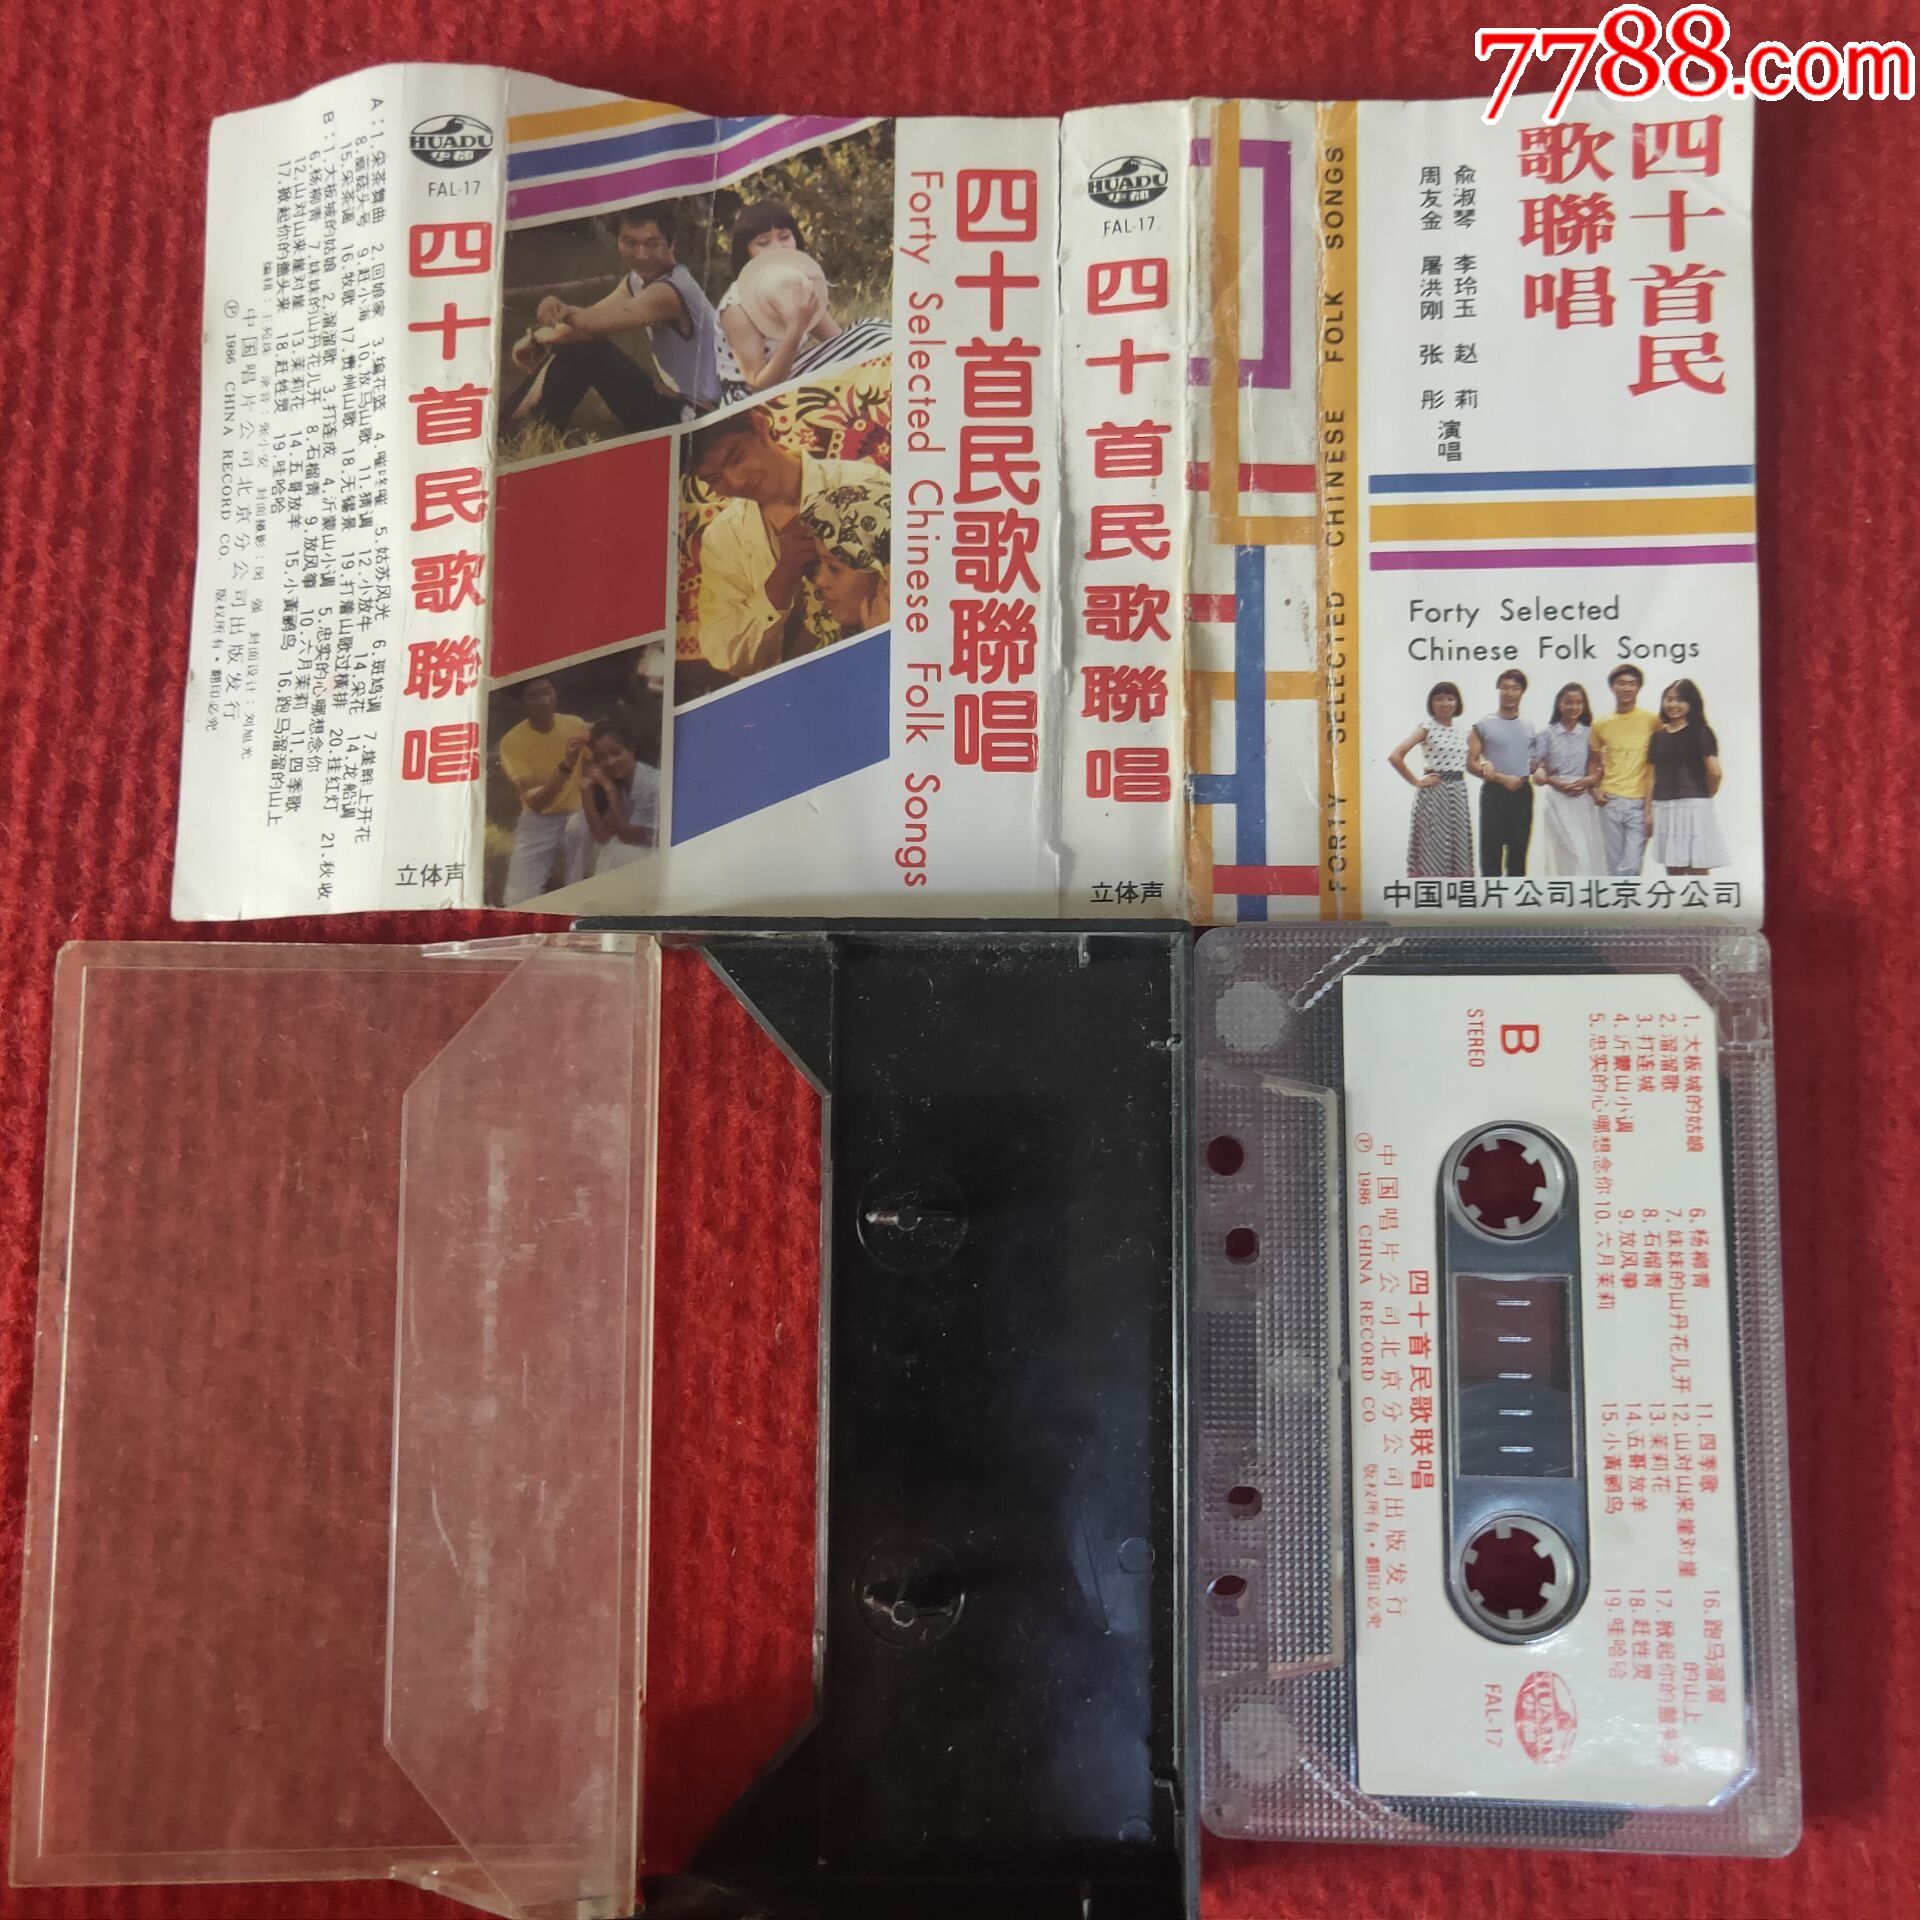 原装正版磁带四十首民歌联唱中国唱片北京公司出版